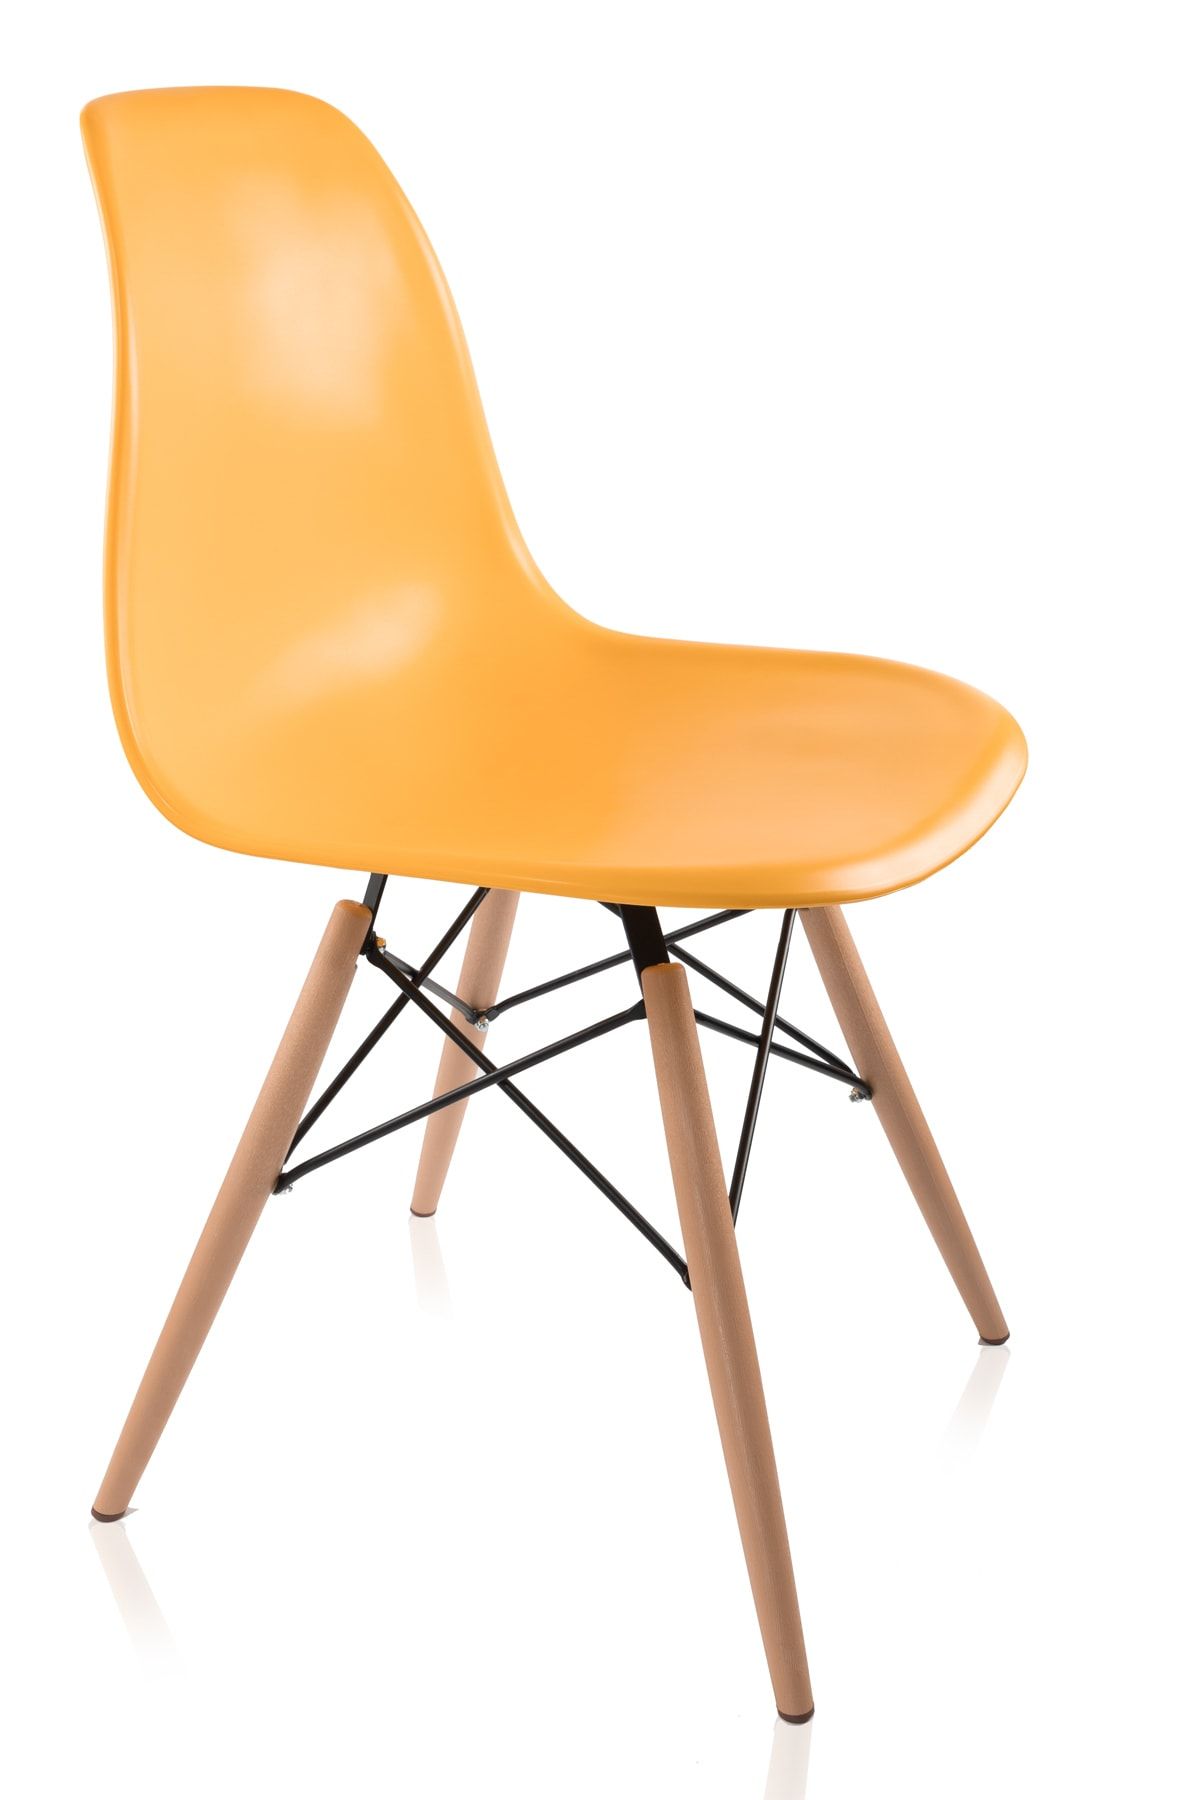 Dorcia Home Sarı Eames Sandalye Cafe Balkon Mutfak Sandalyesi